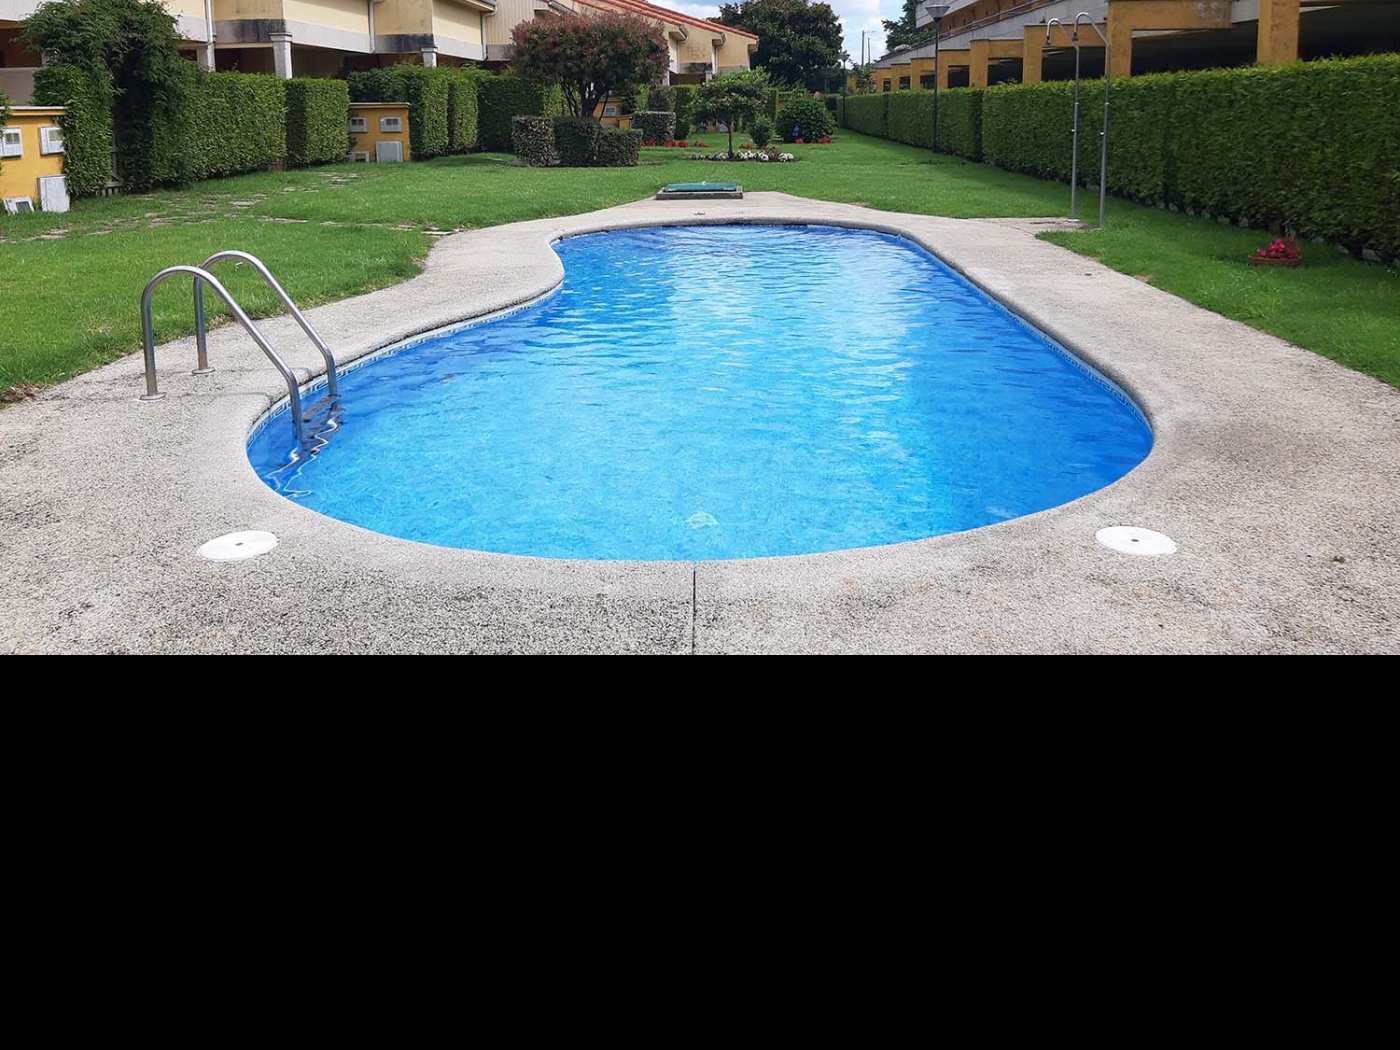 'Patricia'. Apartment with community pool in Galicia in Porto do Son